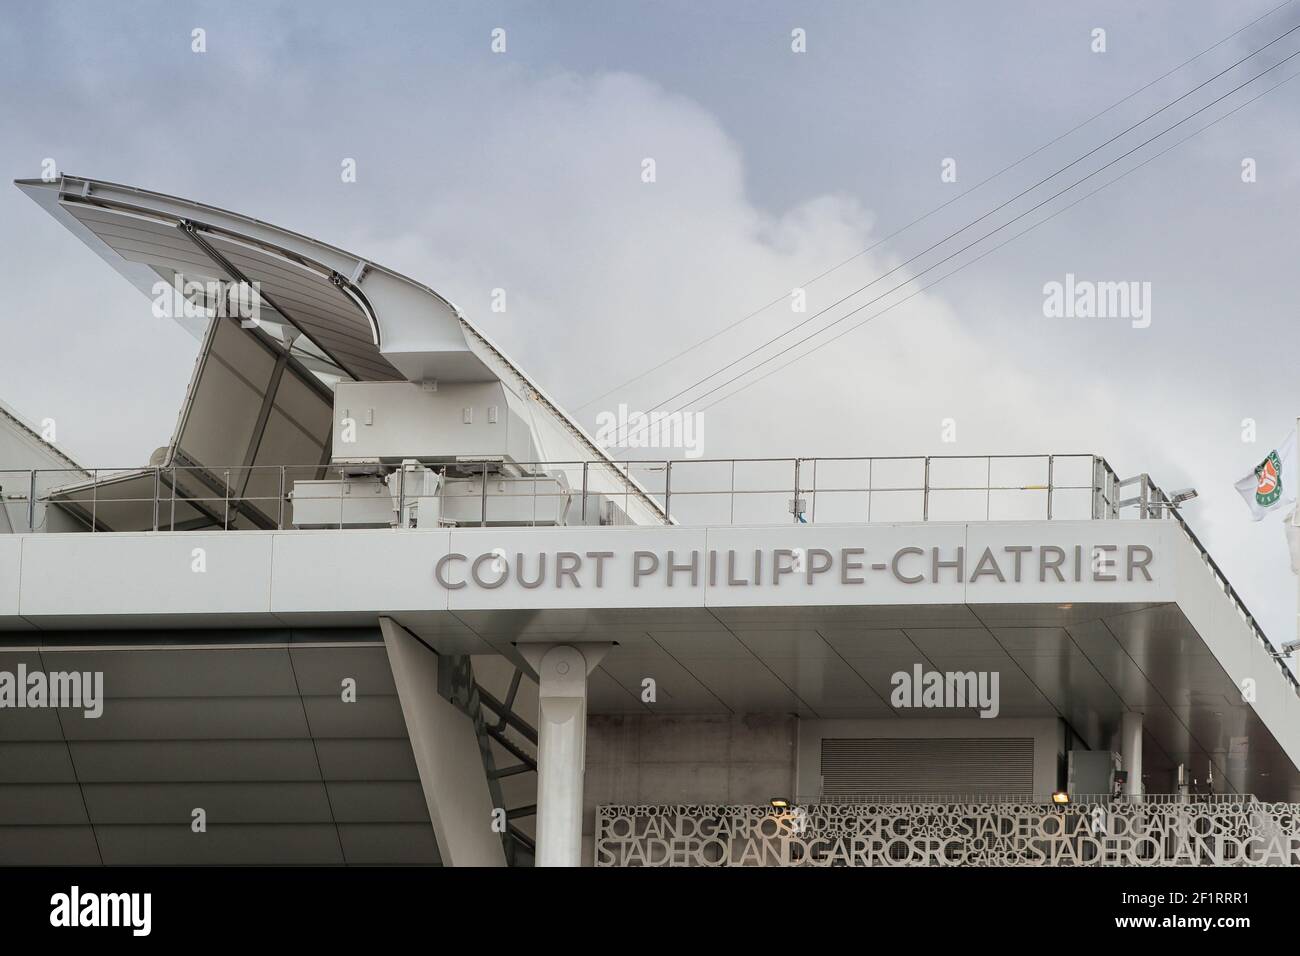 Prima illustrazione dell'ala sul tetto dello stadio Philippe Chatrier durante il Roland Garros 2020, torneo di tennis Grand Slam, il 5 ottobre 2020 allo stadio Roland Garros di Parigi, Francia - Foto Stephane Allaman / DPPI Foto Stock